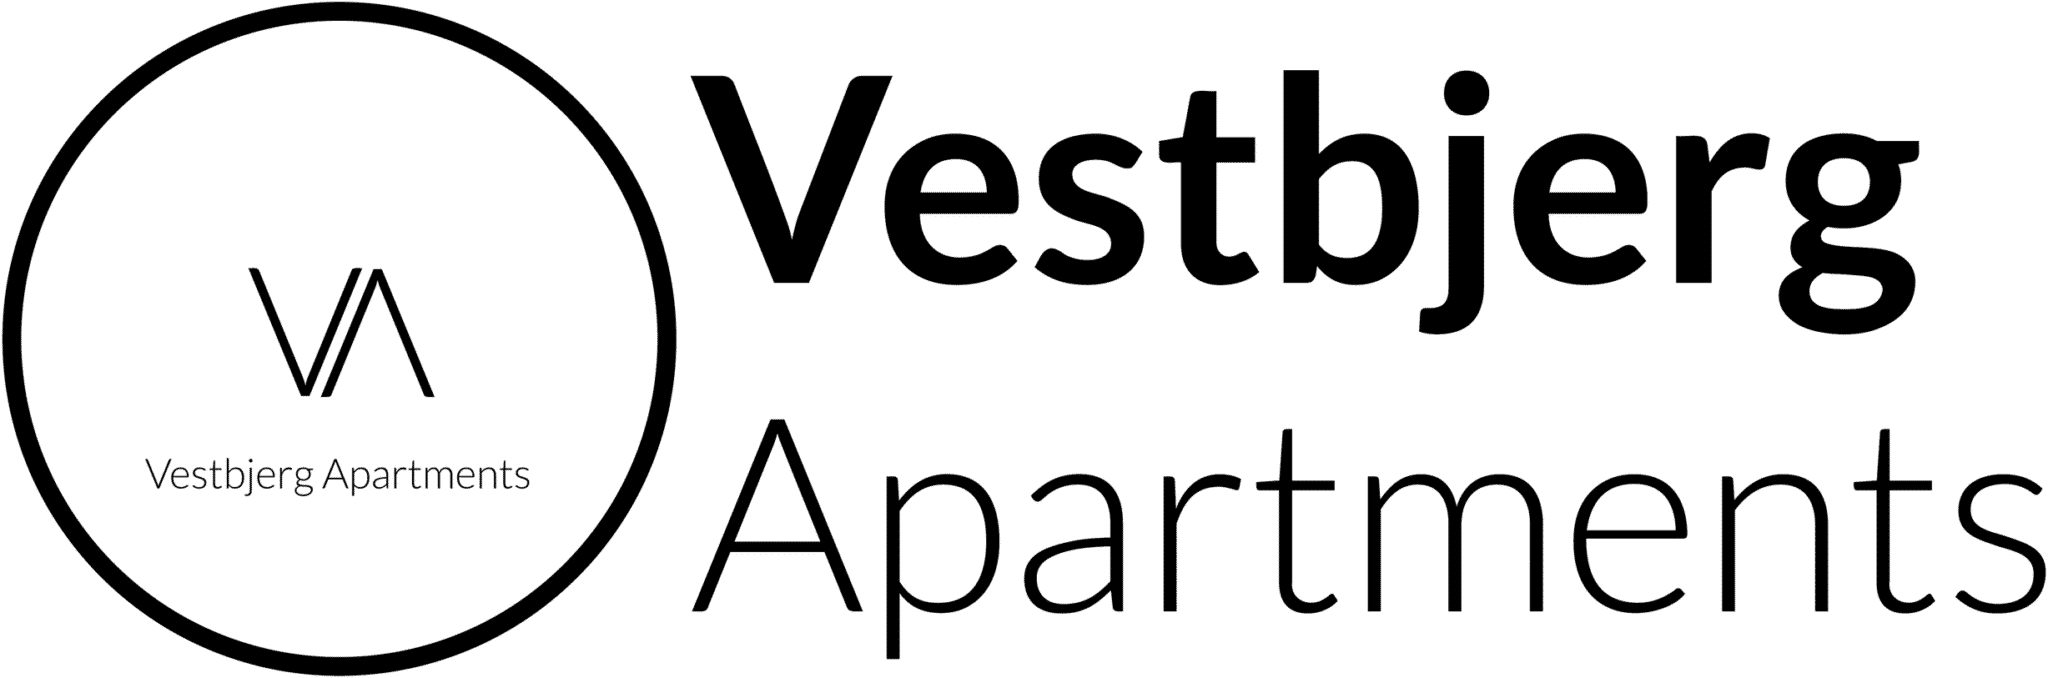 Vestbjerg Apartments